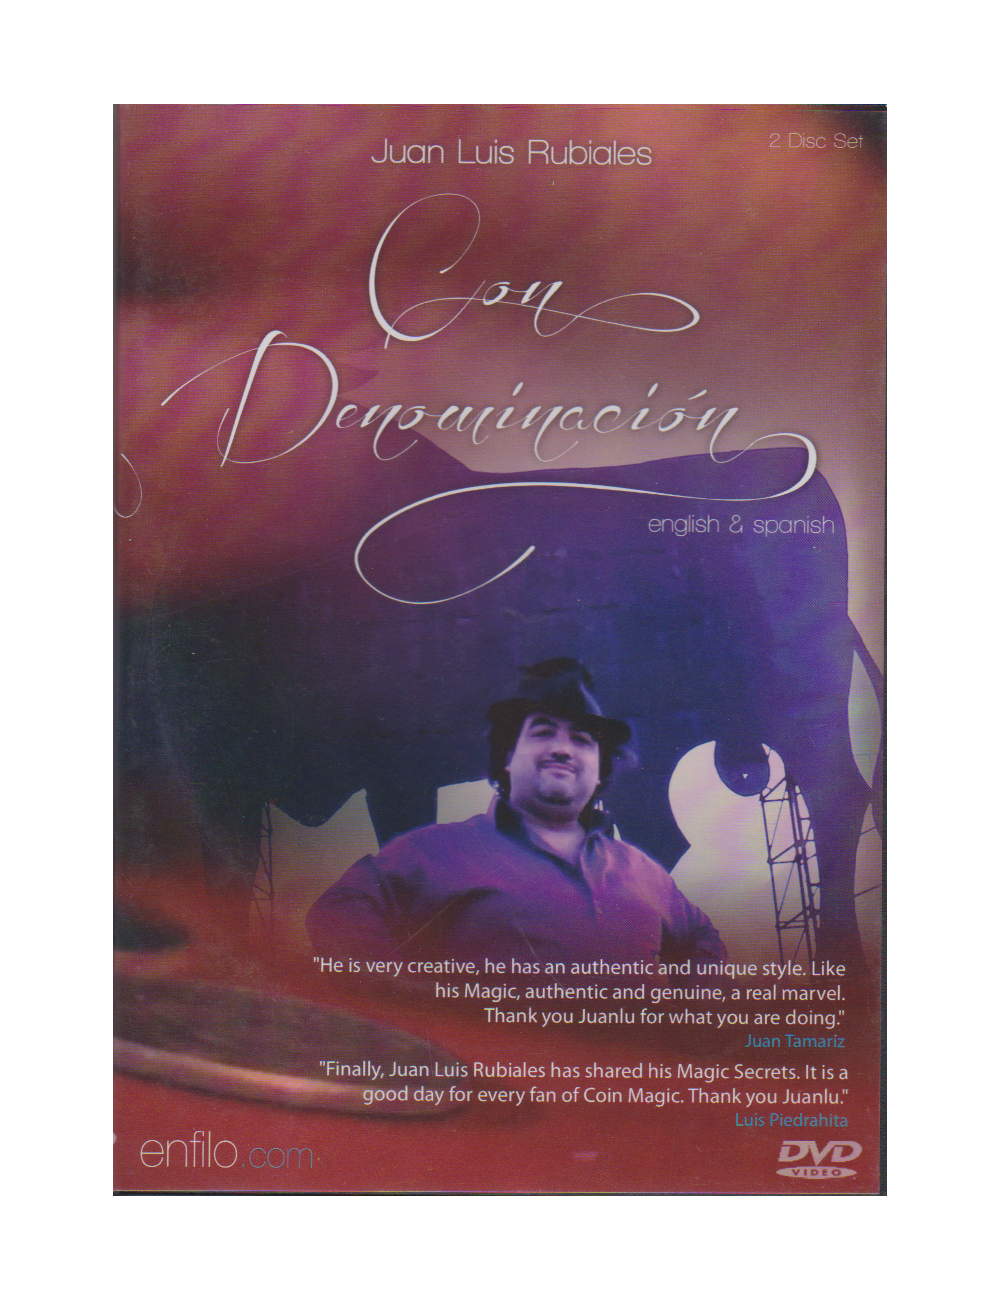 DVD CON DENOMINACION - Juan Luis Rubiales (2 DVD SET)